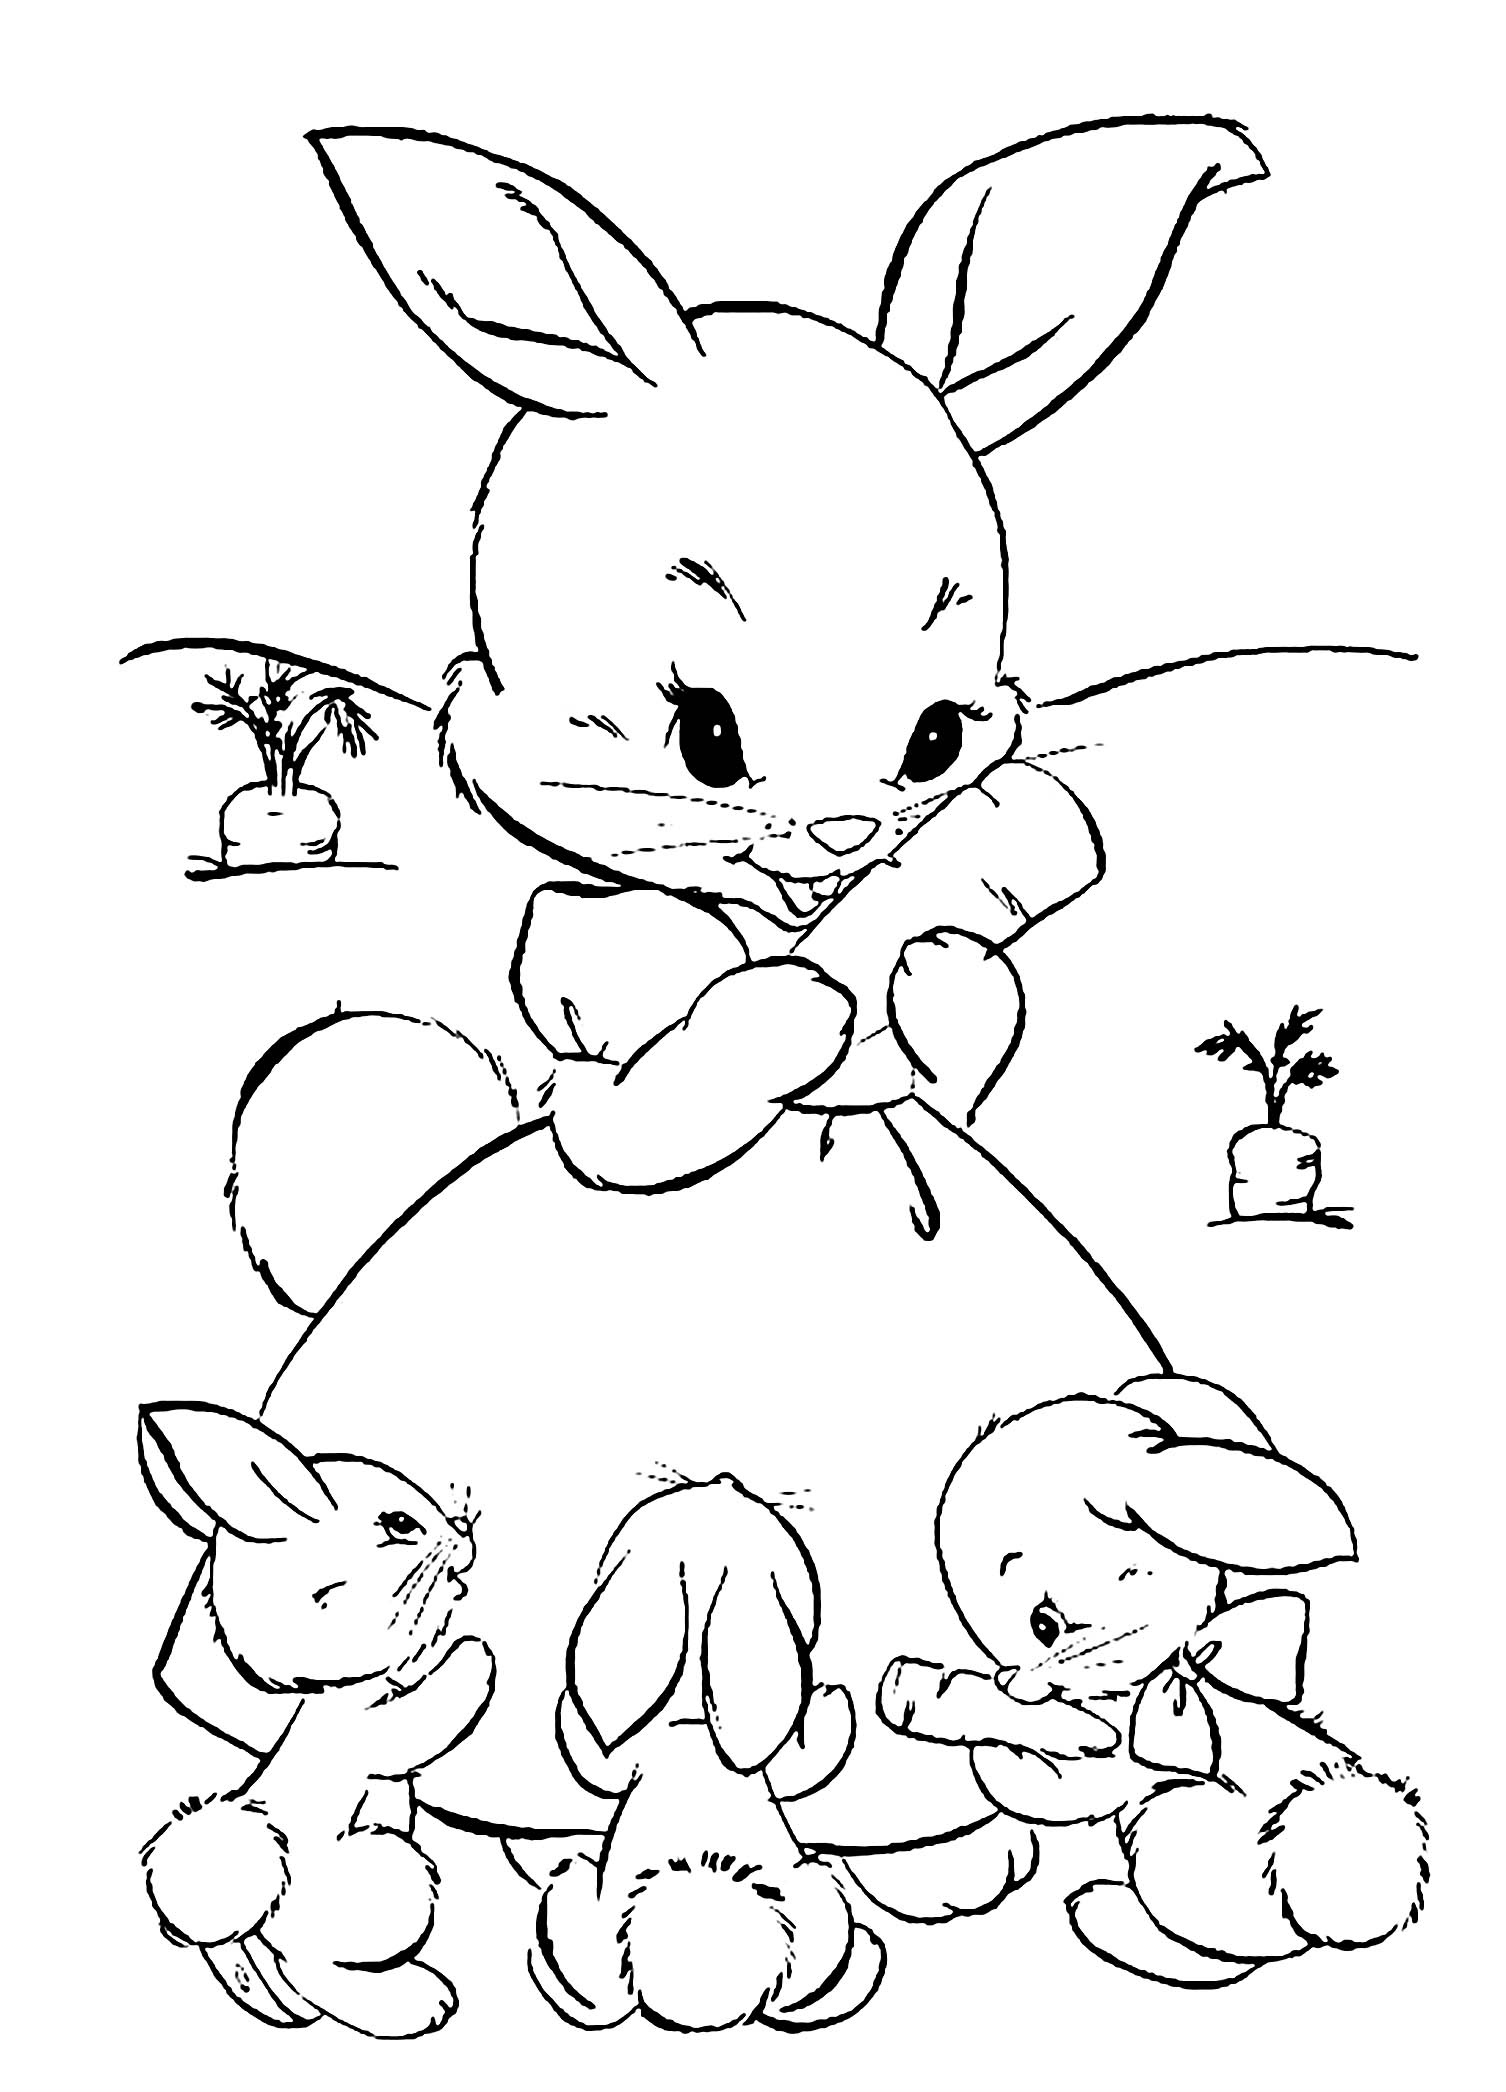 Trang tô màu cho công chúa thỏ và ba chú thỏ nhỏ